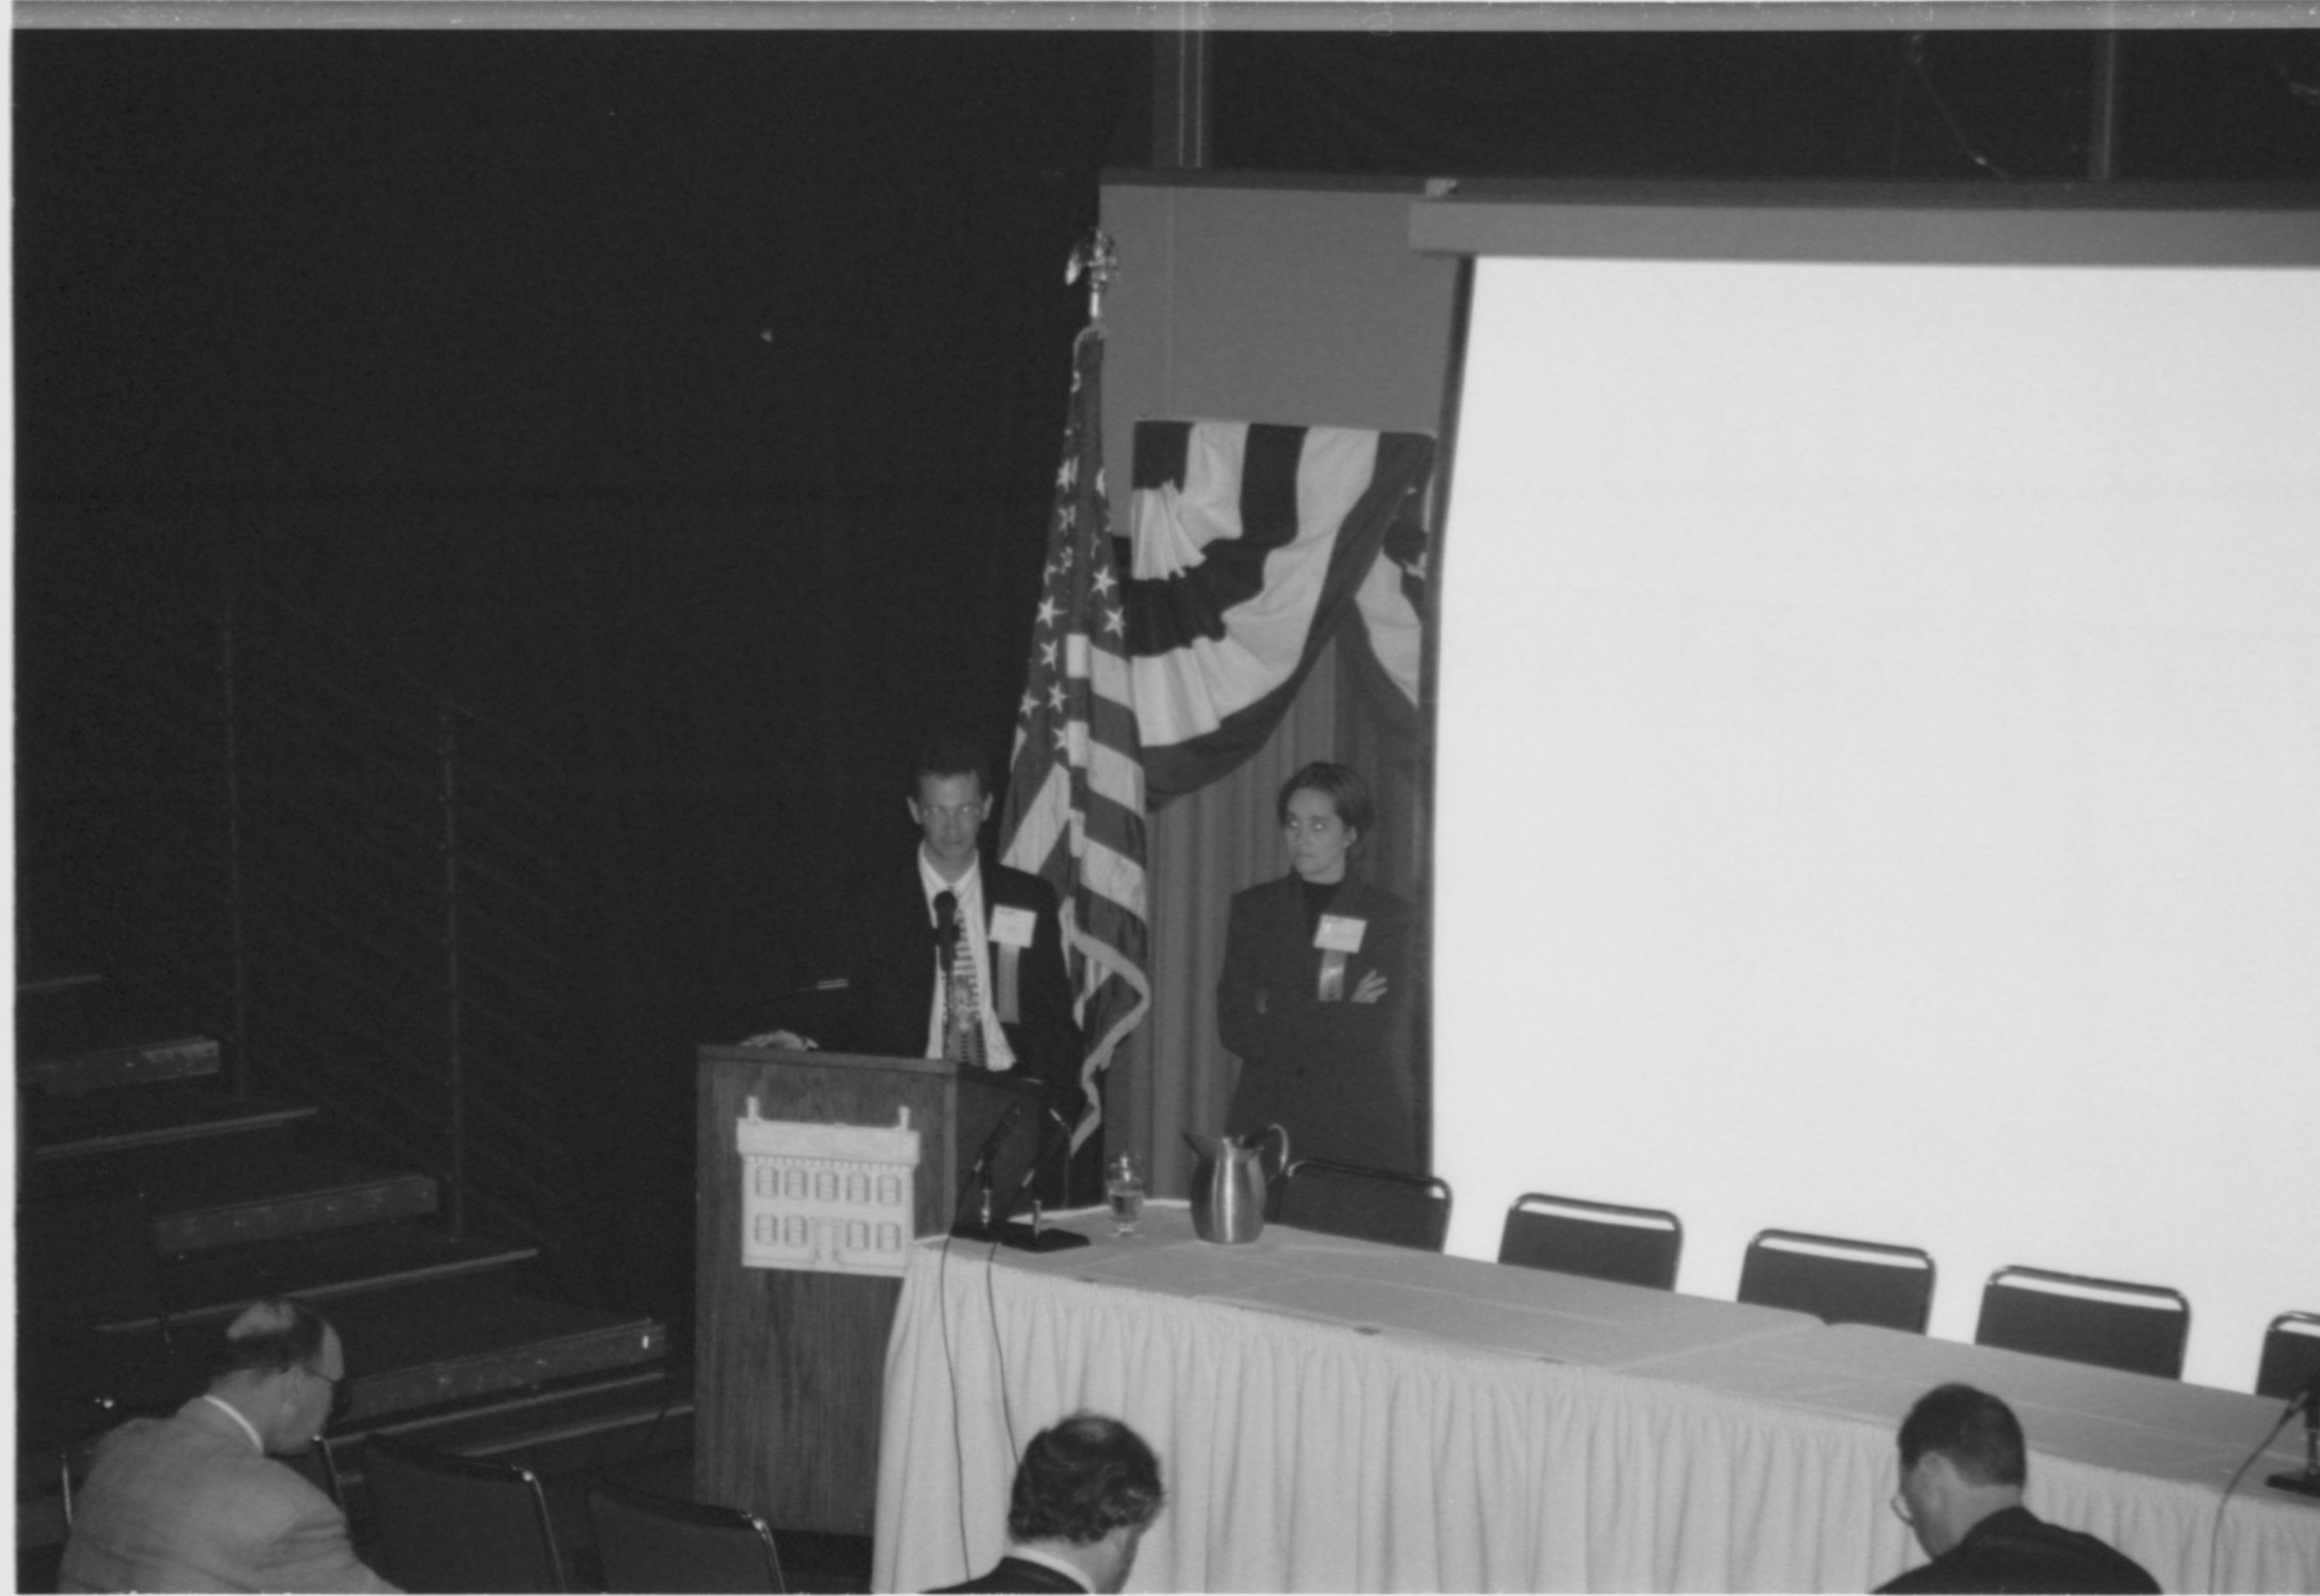 Man and woman at podium. 1999-16; 28 Colloquium, 1999